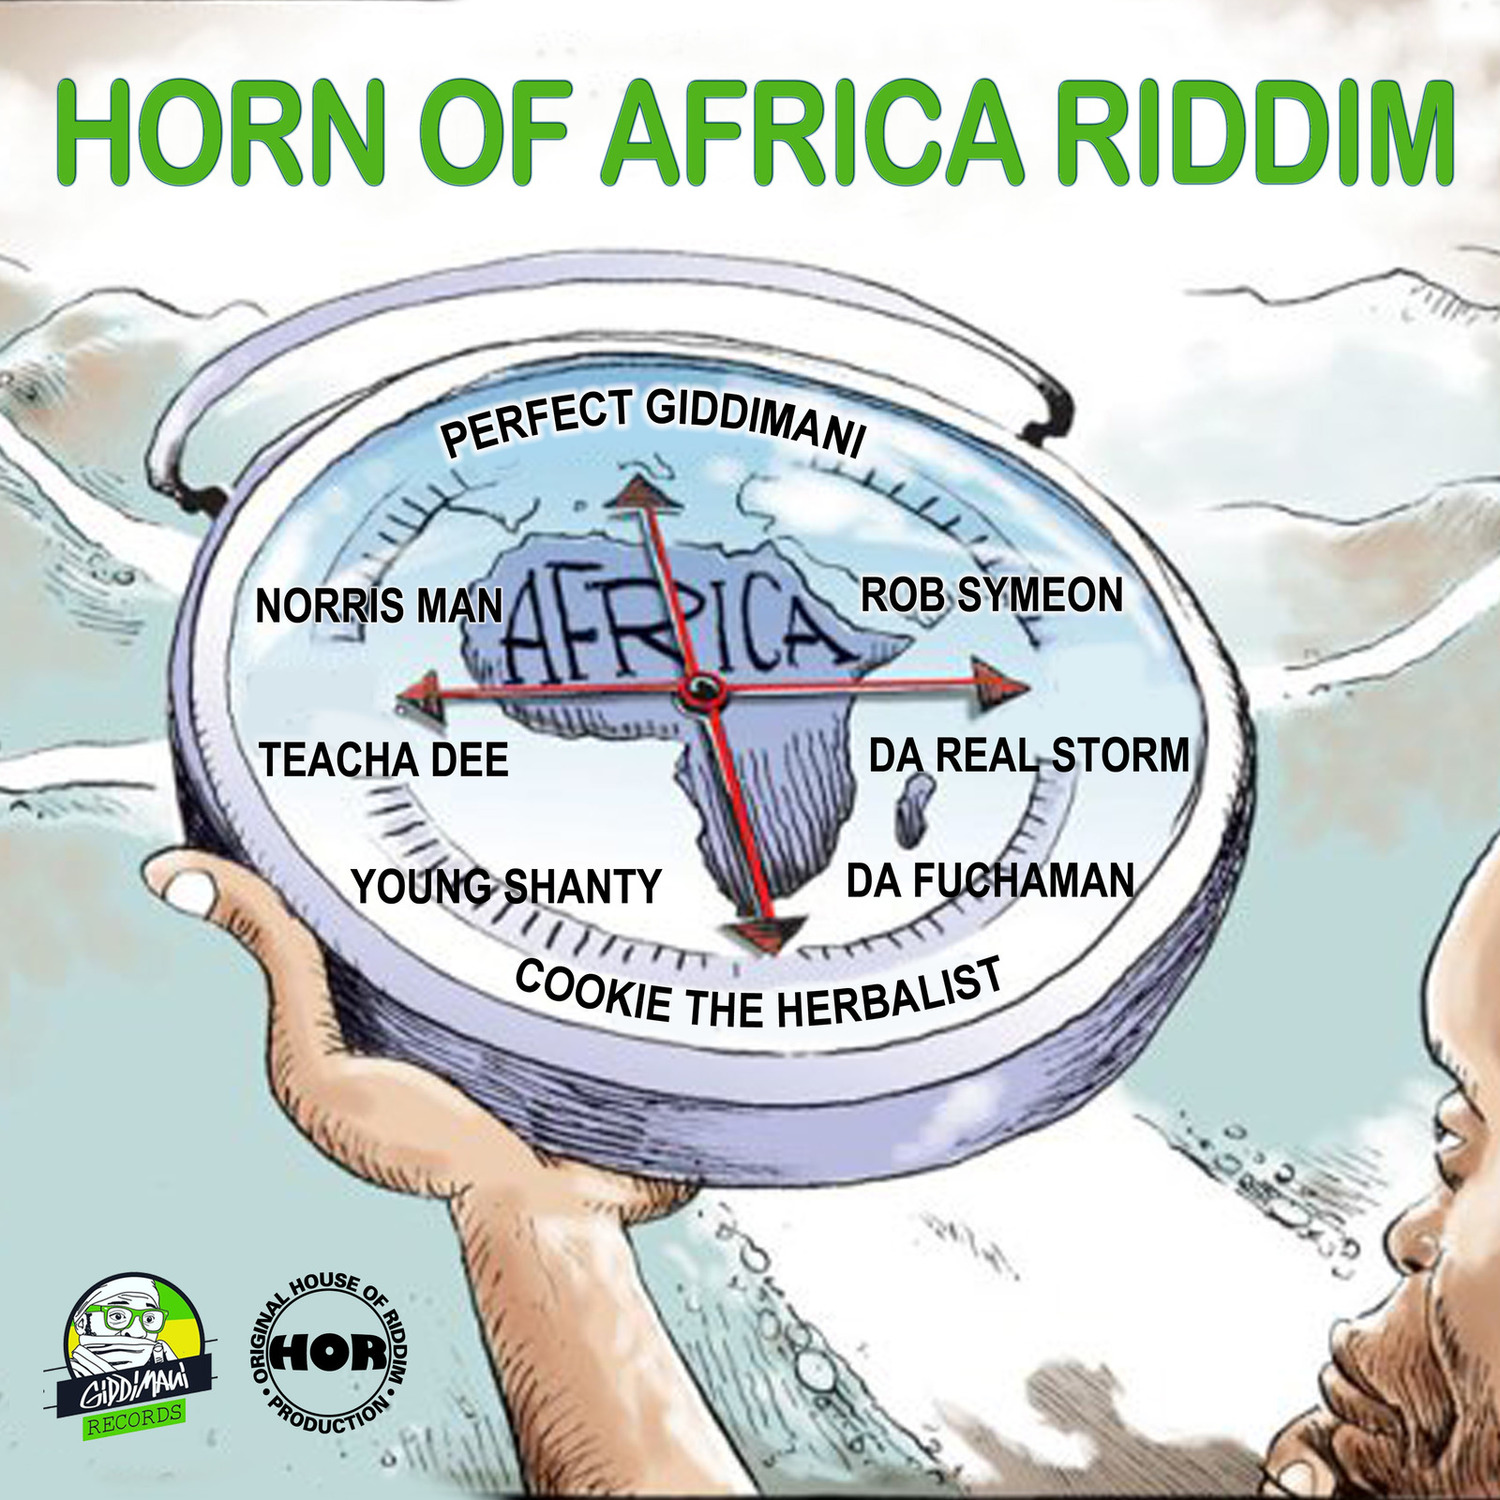 Horn of Africa Riddim